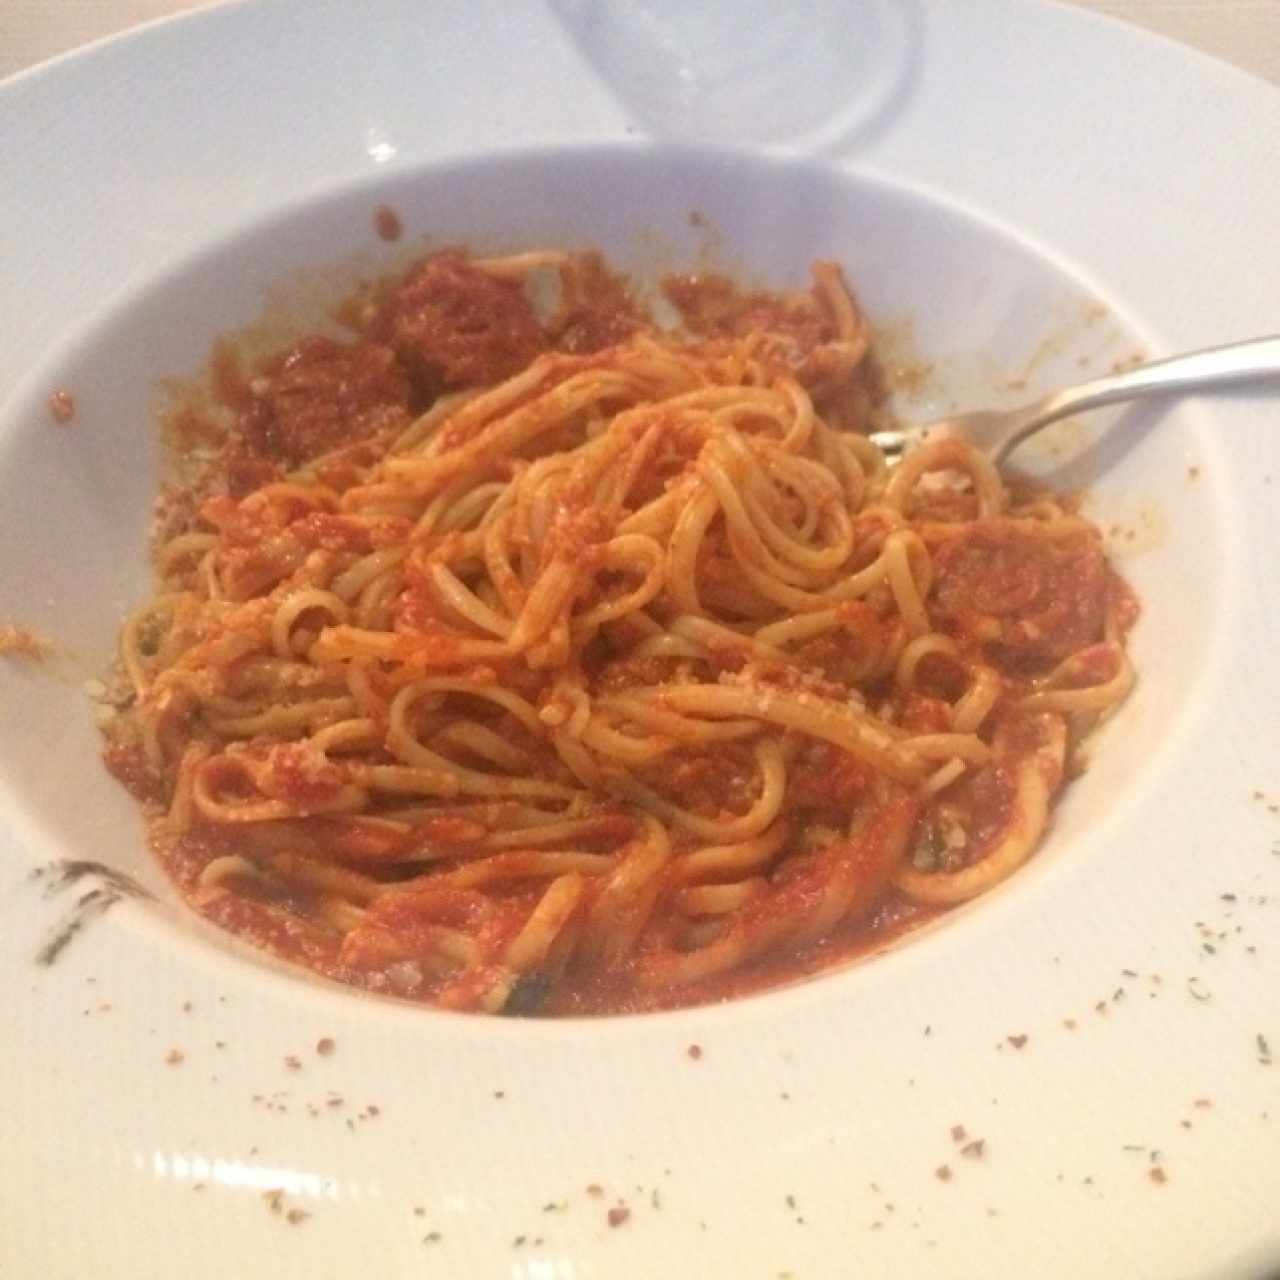 Triste Spaguetti con Salchicha Italiana “recomendacion del chef” 🤦🏽‍♂️